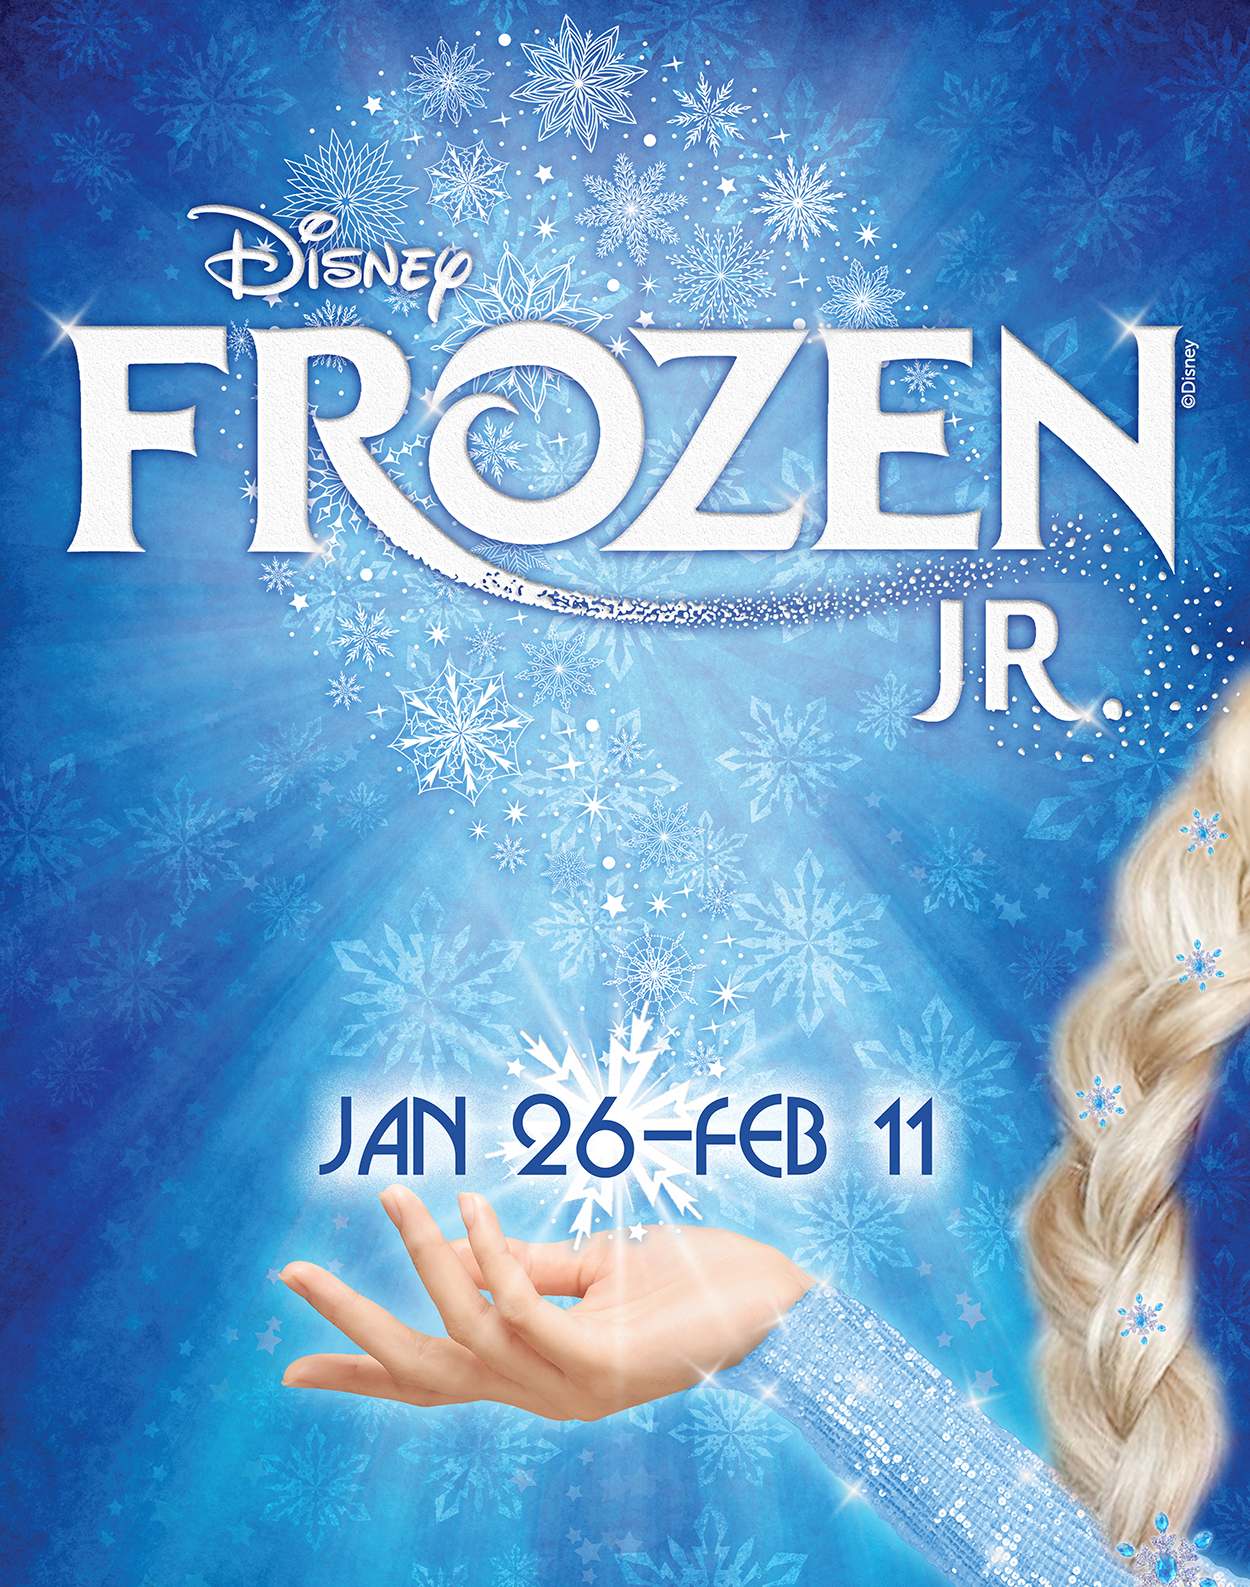 Disney's Frozen Jr. by Kristen Anderson-Lopez